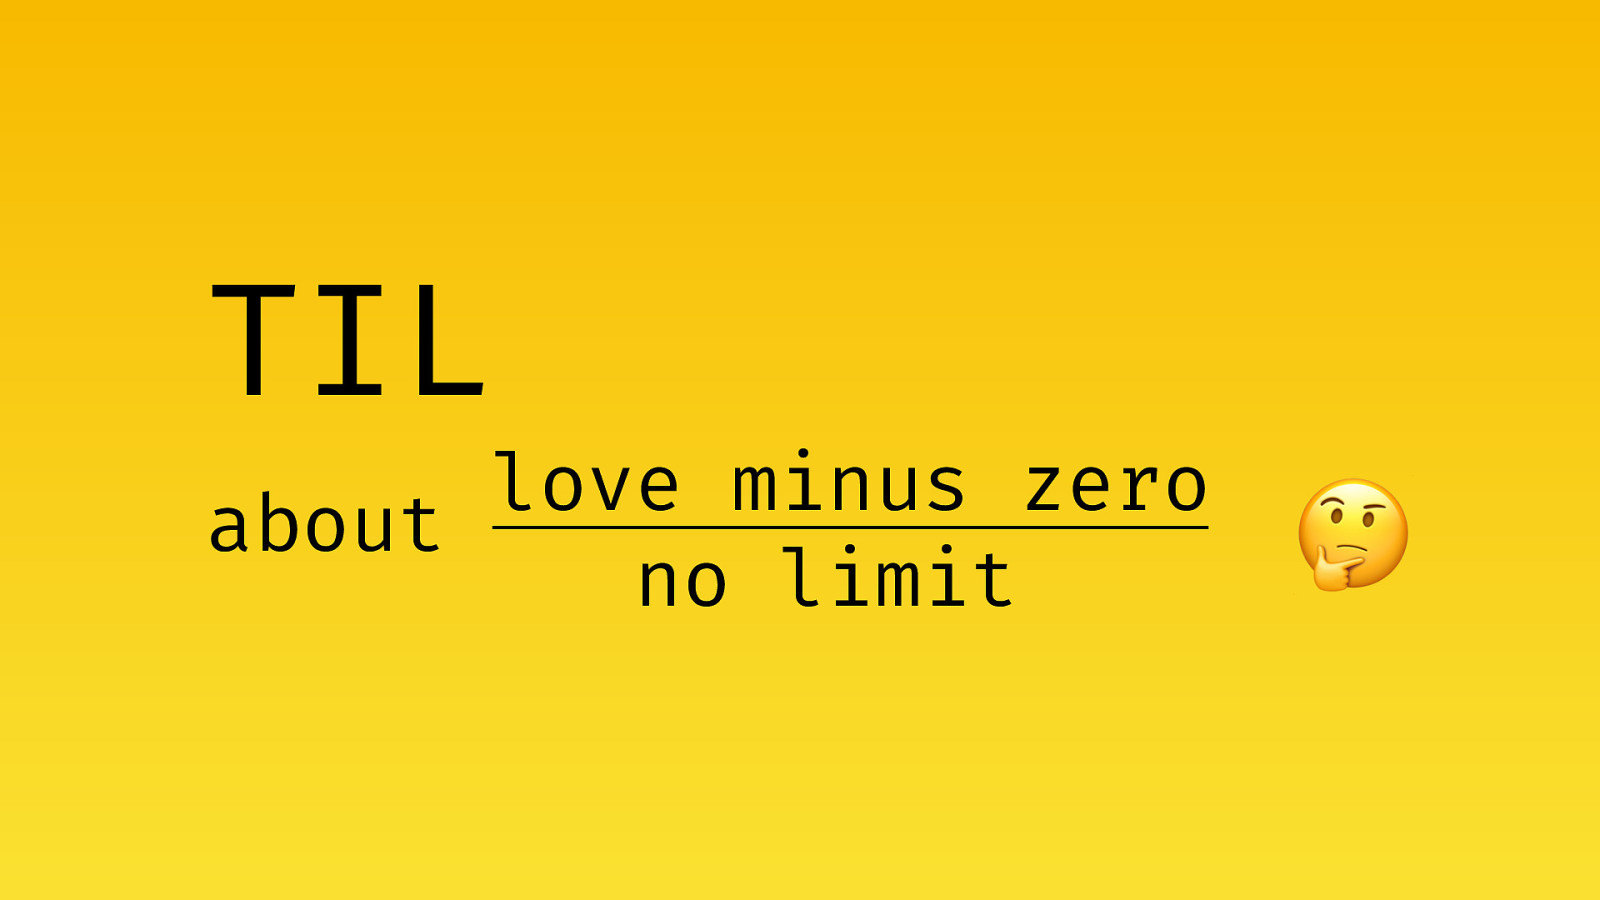 TIL about love minus zero/no limit